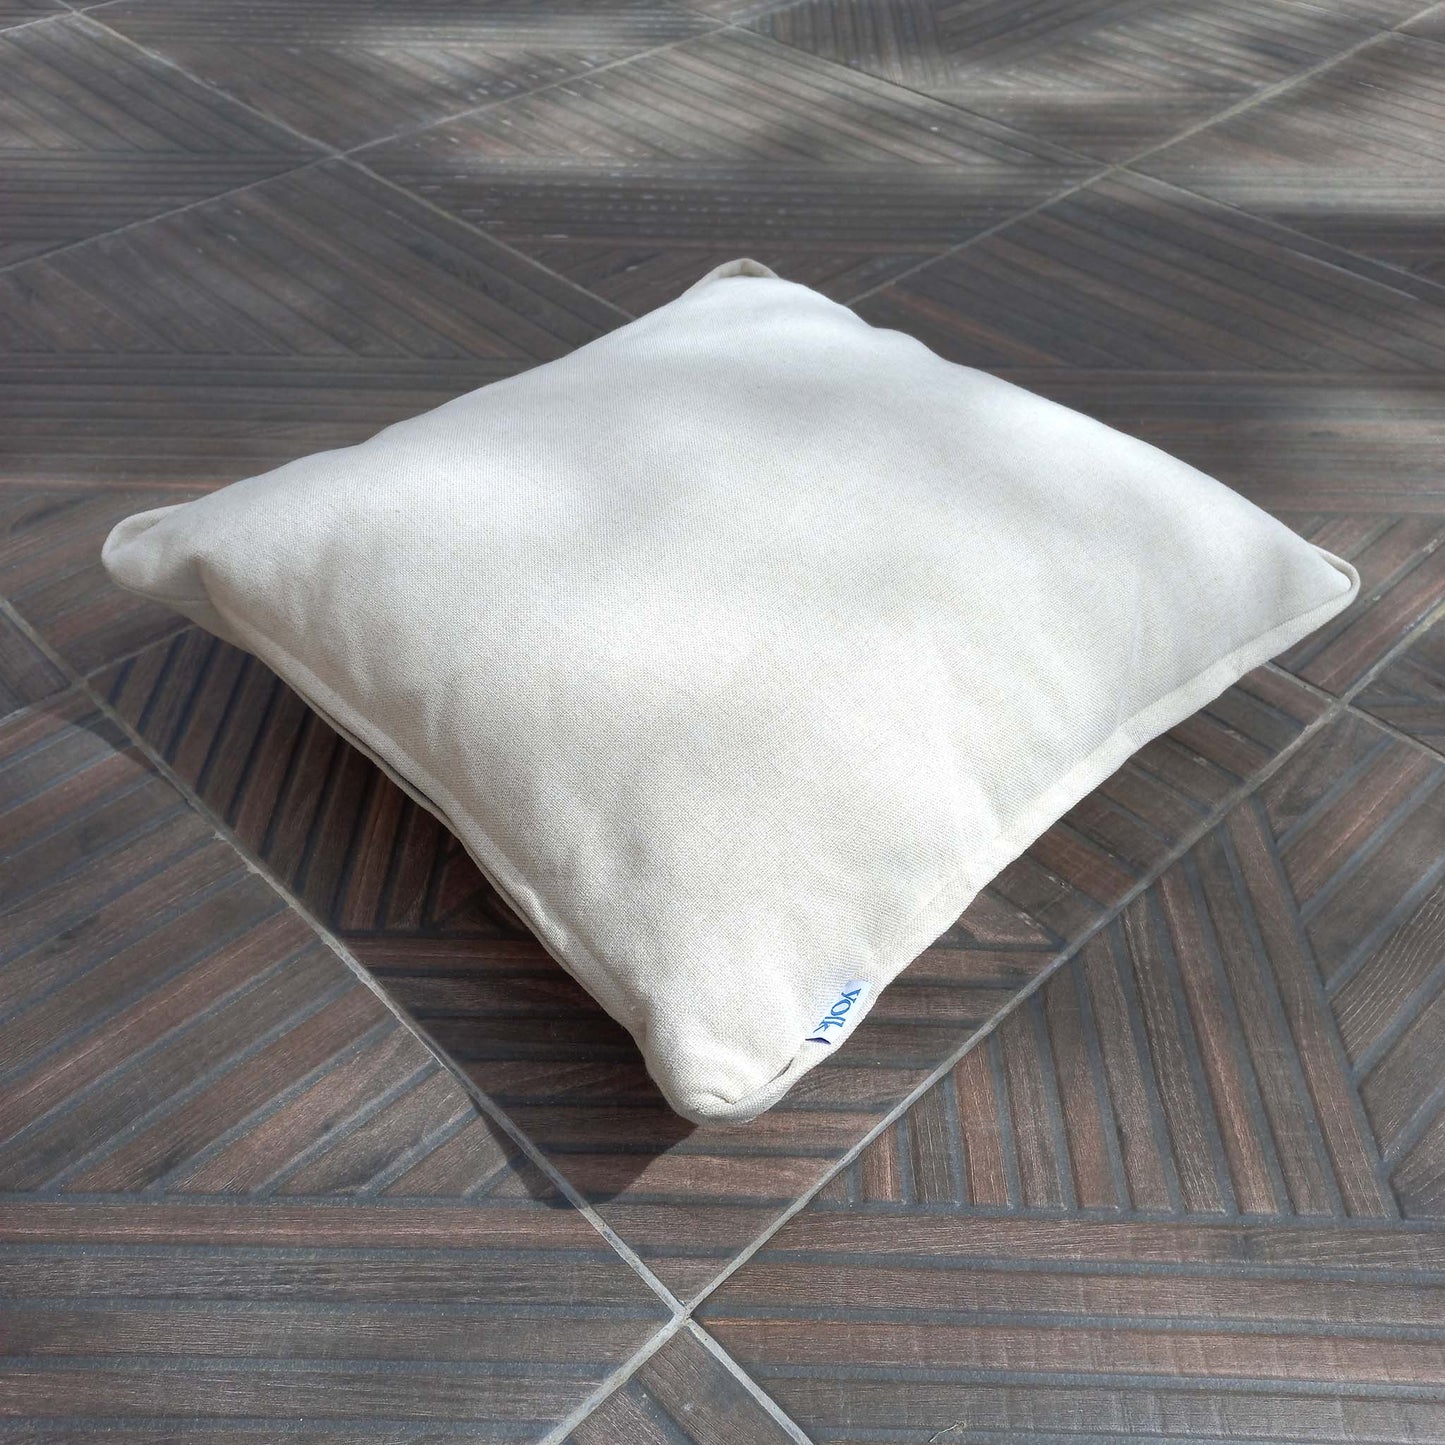 Decorative cushion on a patio floor